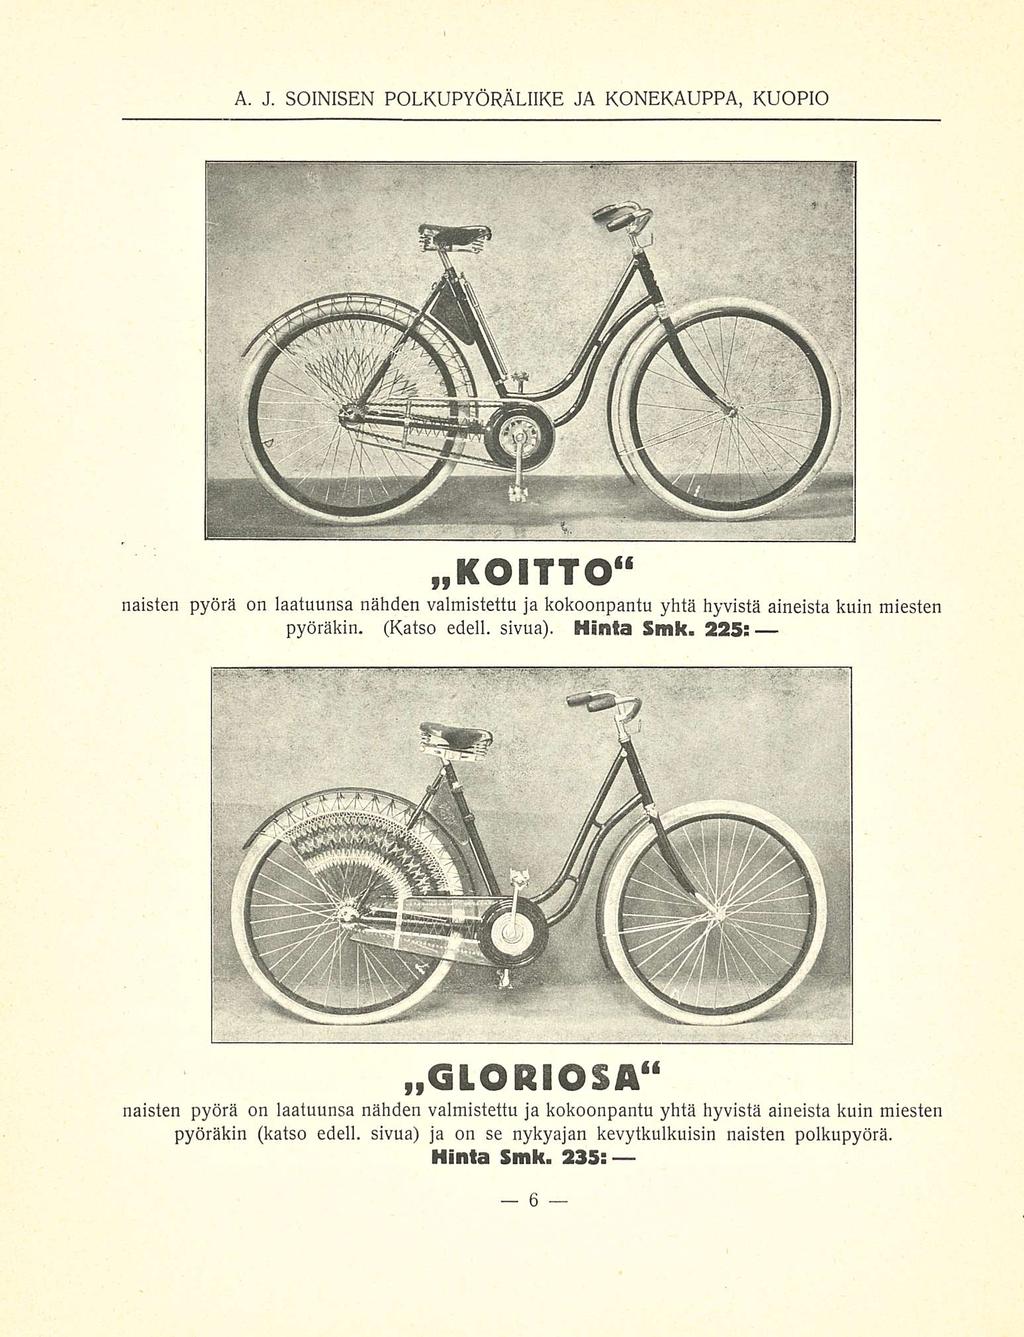 »KOITTO" naisten pyörä on laatuunsa nähden valmistettu ja kokoonpantu yhtä hyvistä aineista kuin miesten pyöräkin. (Katso edell. sivua). Hinta Smk.